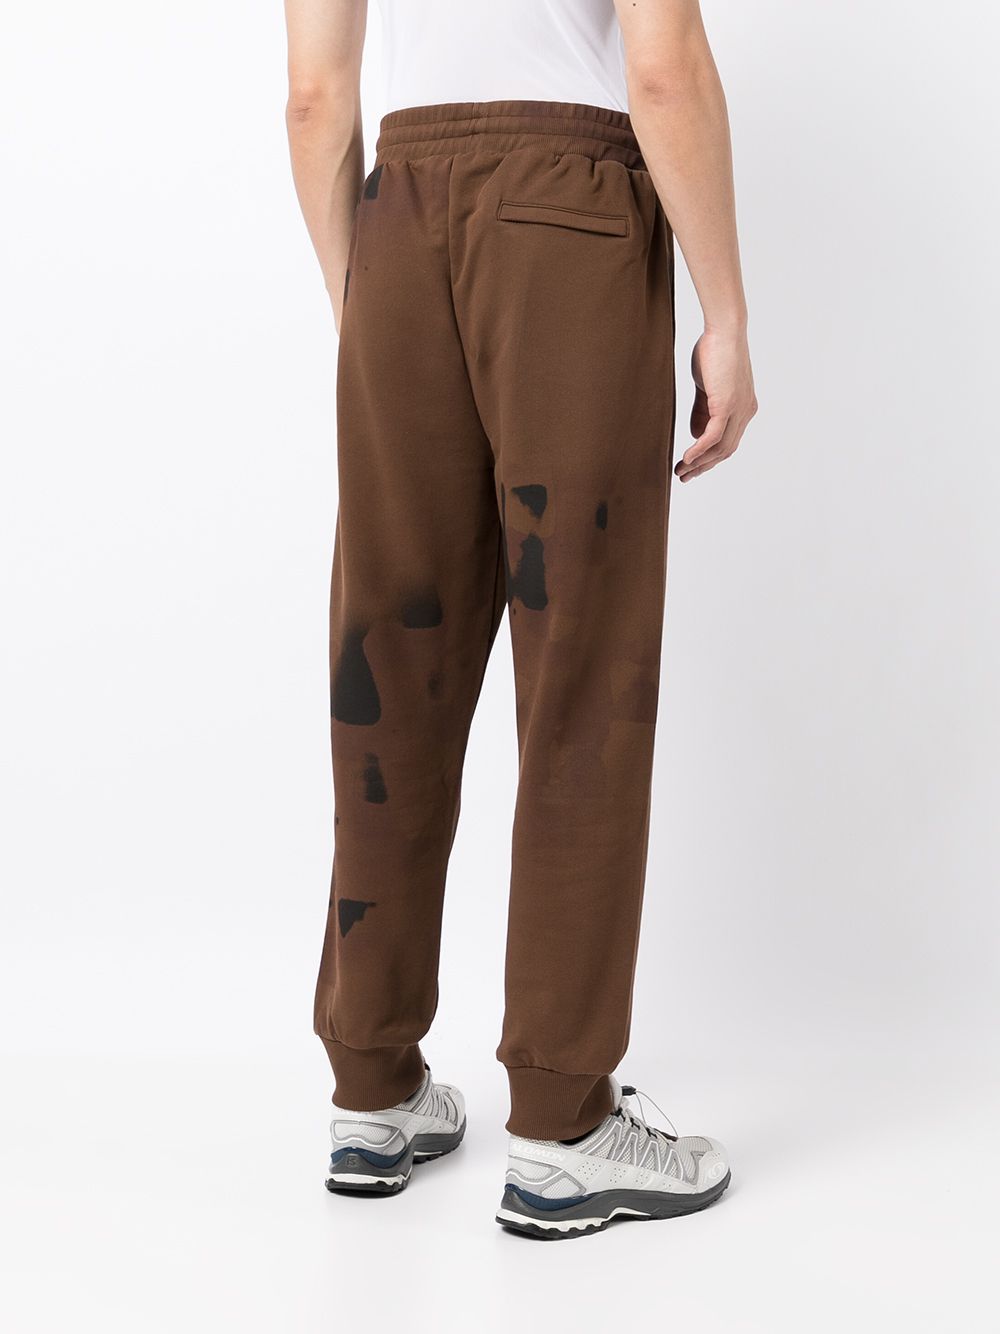 фото A-cold-wall* спортивные брюки с абстрактным принтом